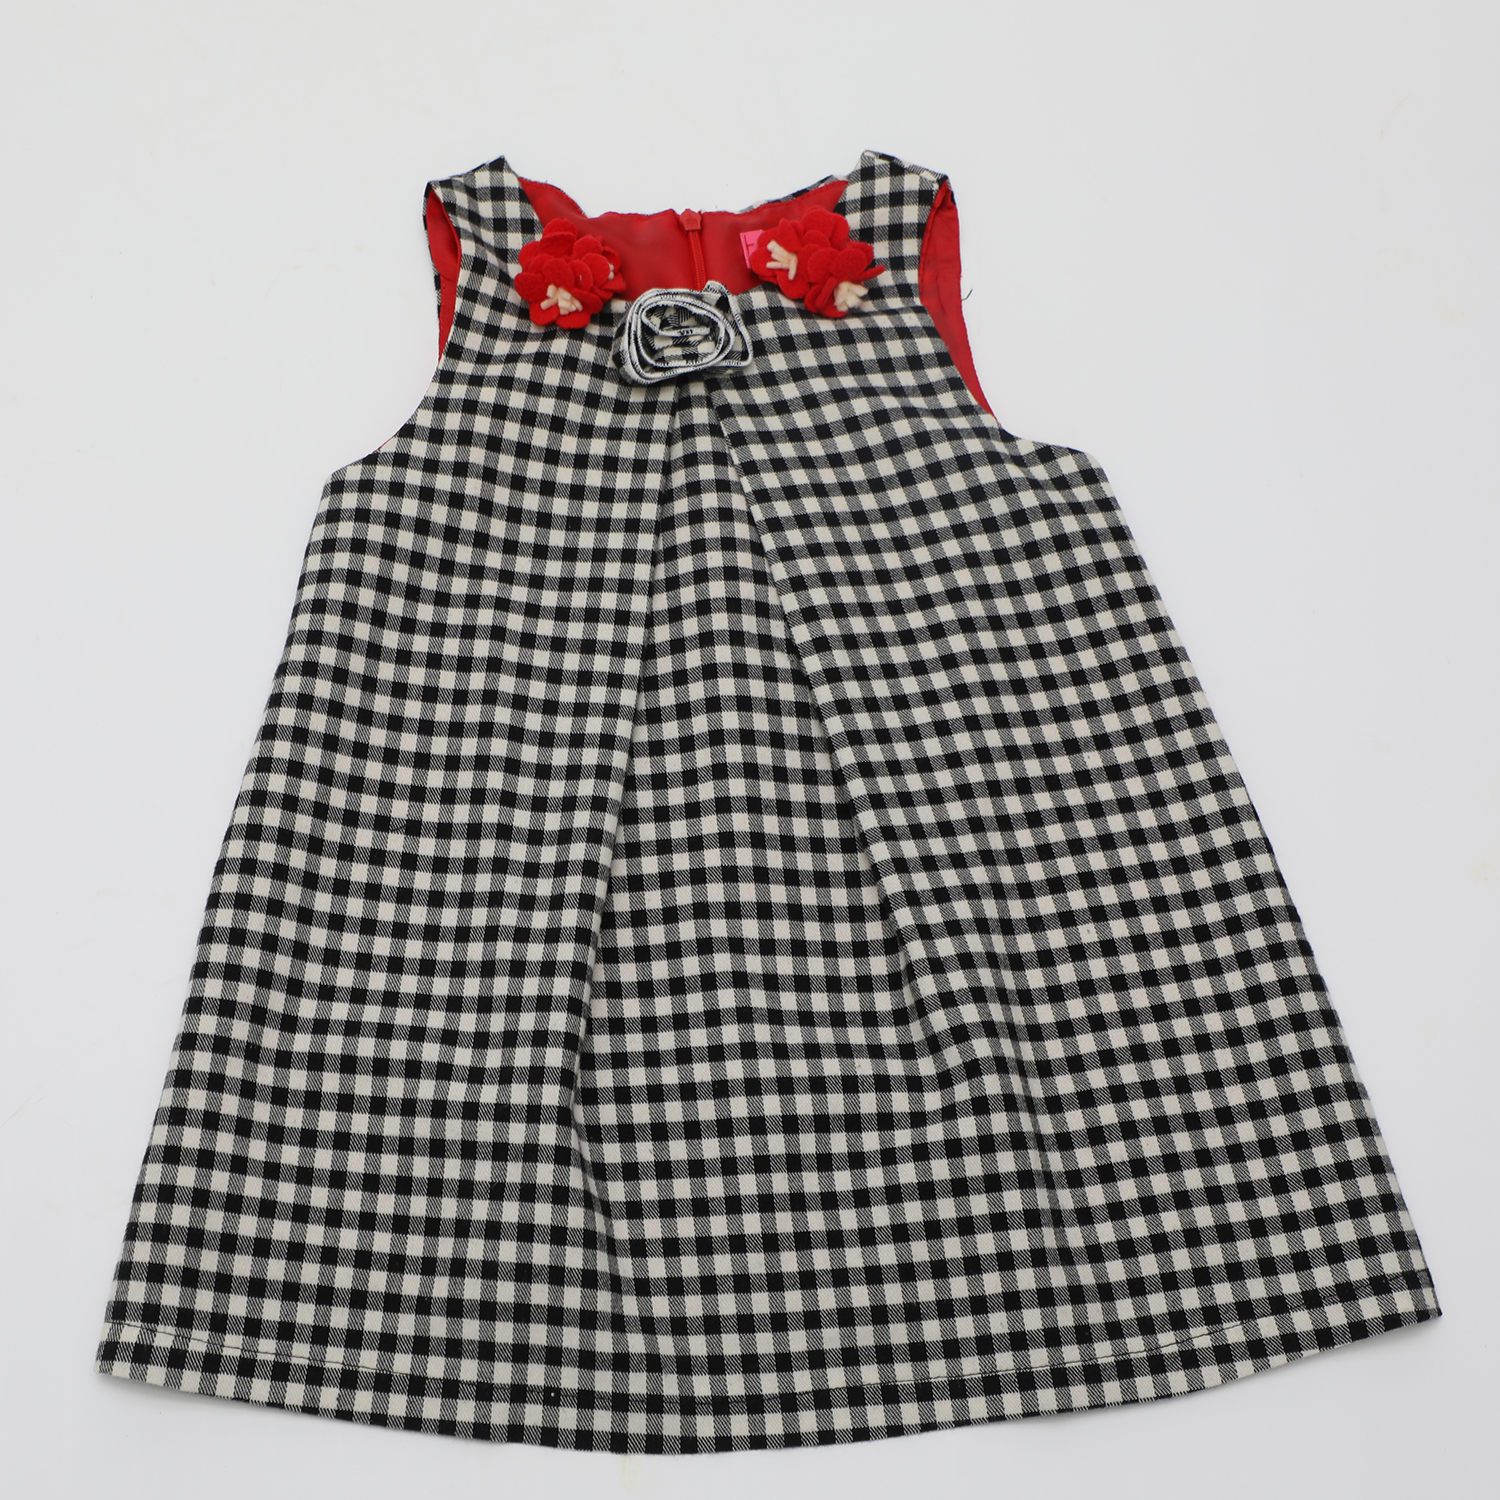 Παιδικά/Girls/Ρούχα/Φορέματα Κοντομάνικα-Αμάνικα SAM 0-13 - Παιδικό φόρεμα SAM 0-13 καρό μαύρο λευκό